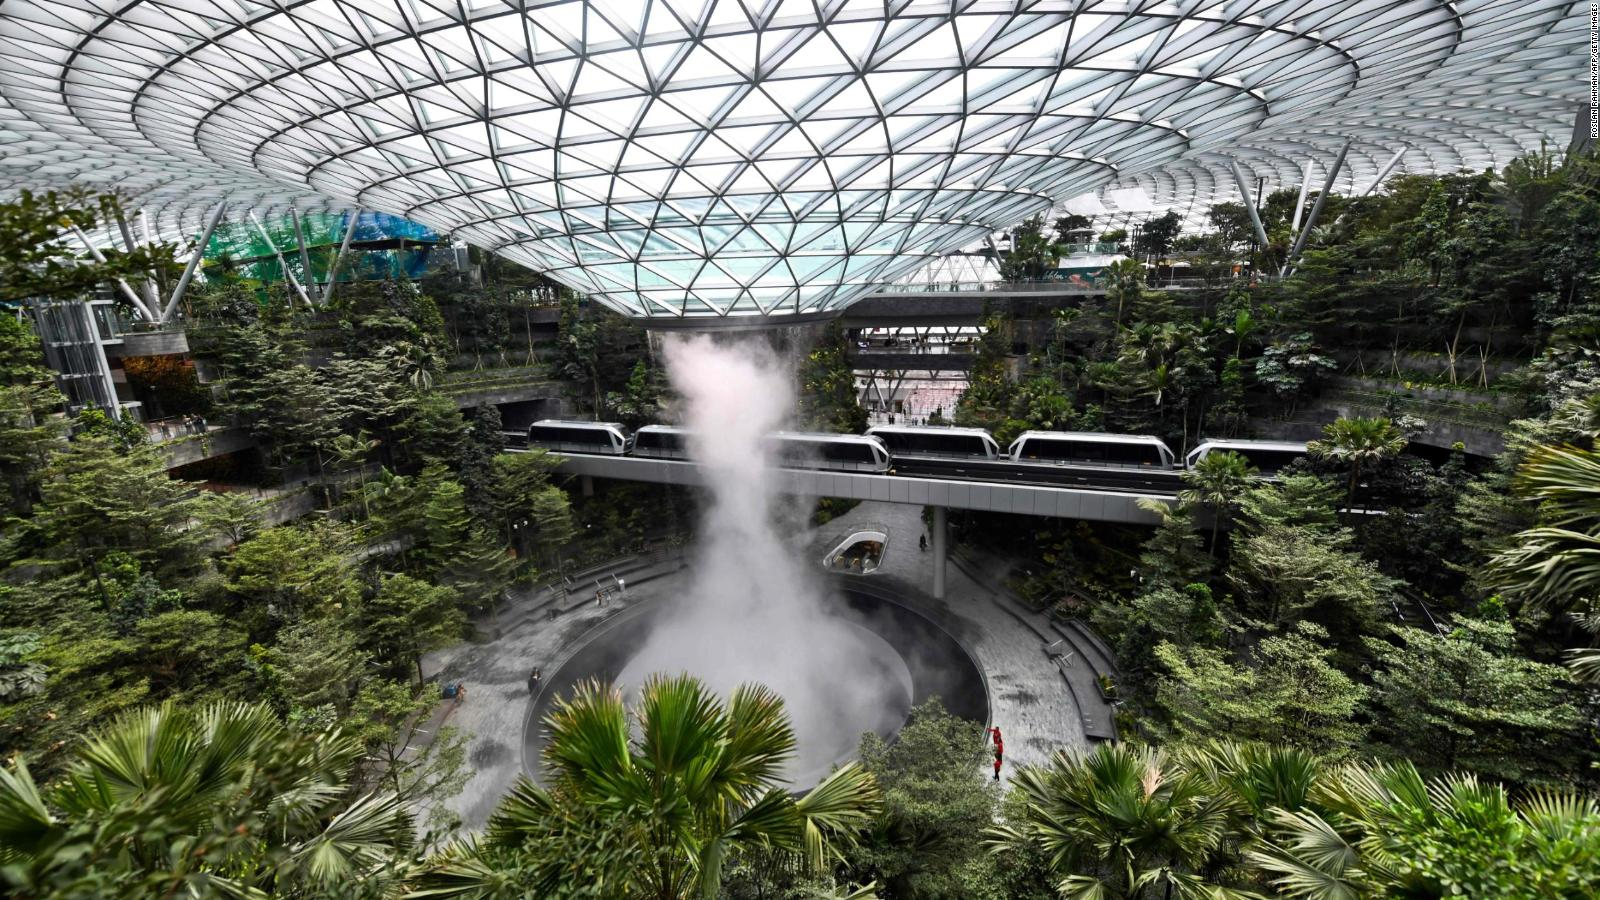 Les 10 aéroports les plus luxieux du monde entier - Aéroport International de Changi, Singapour